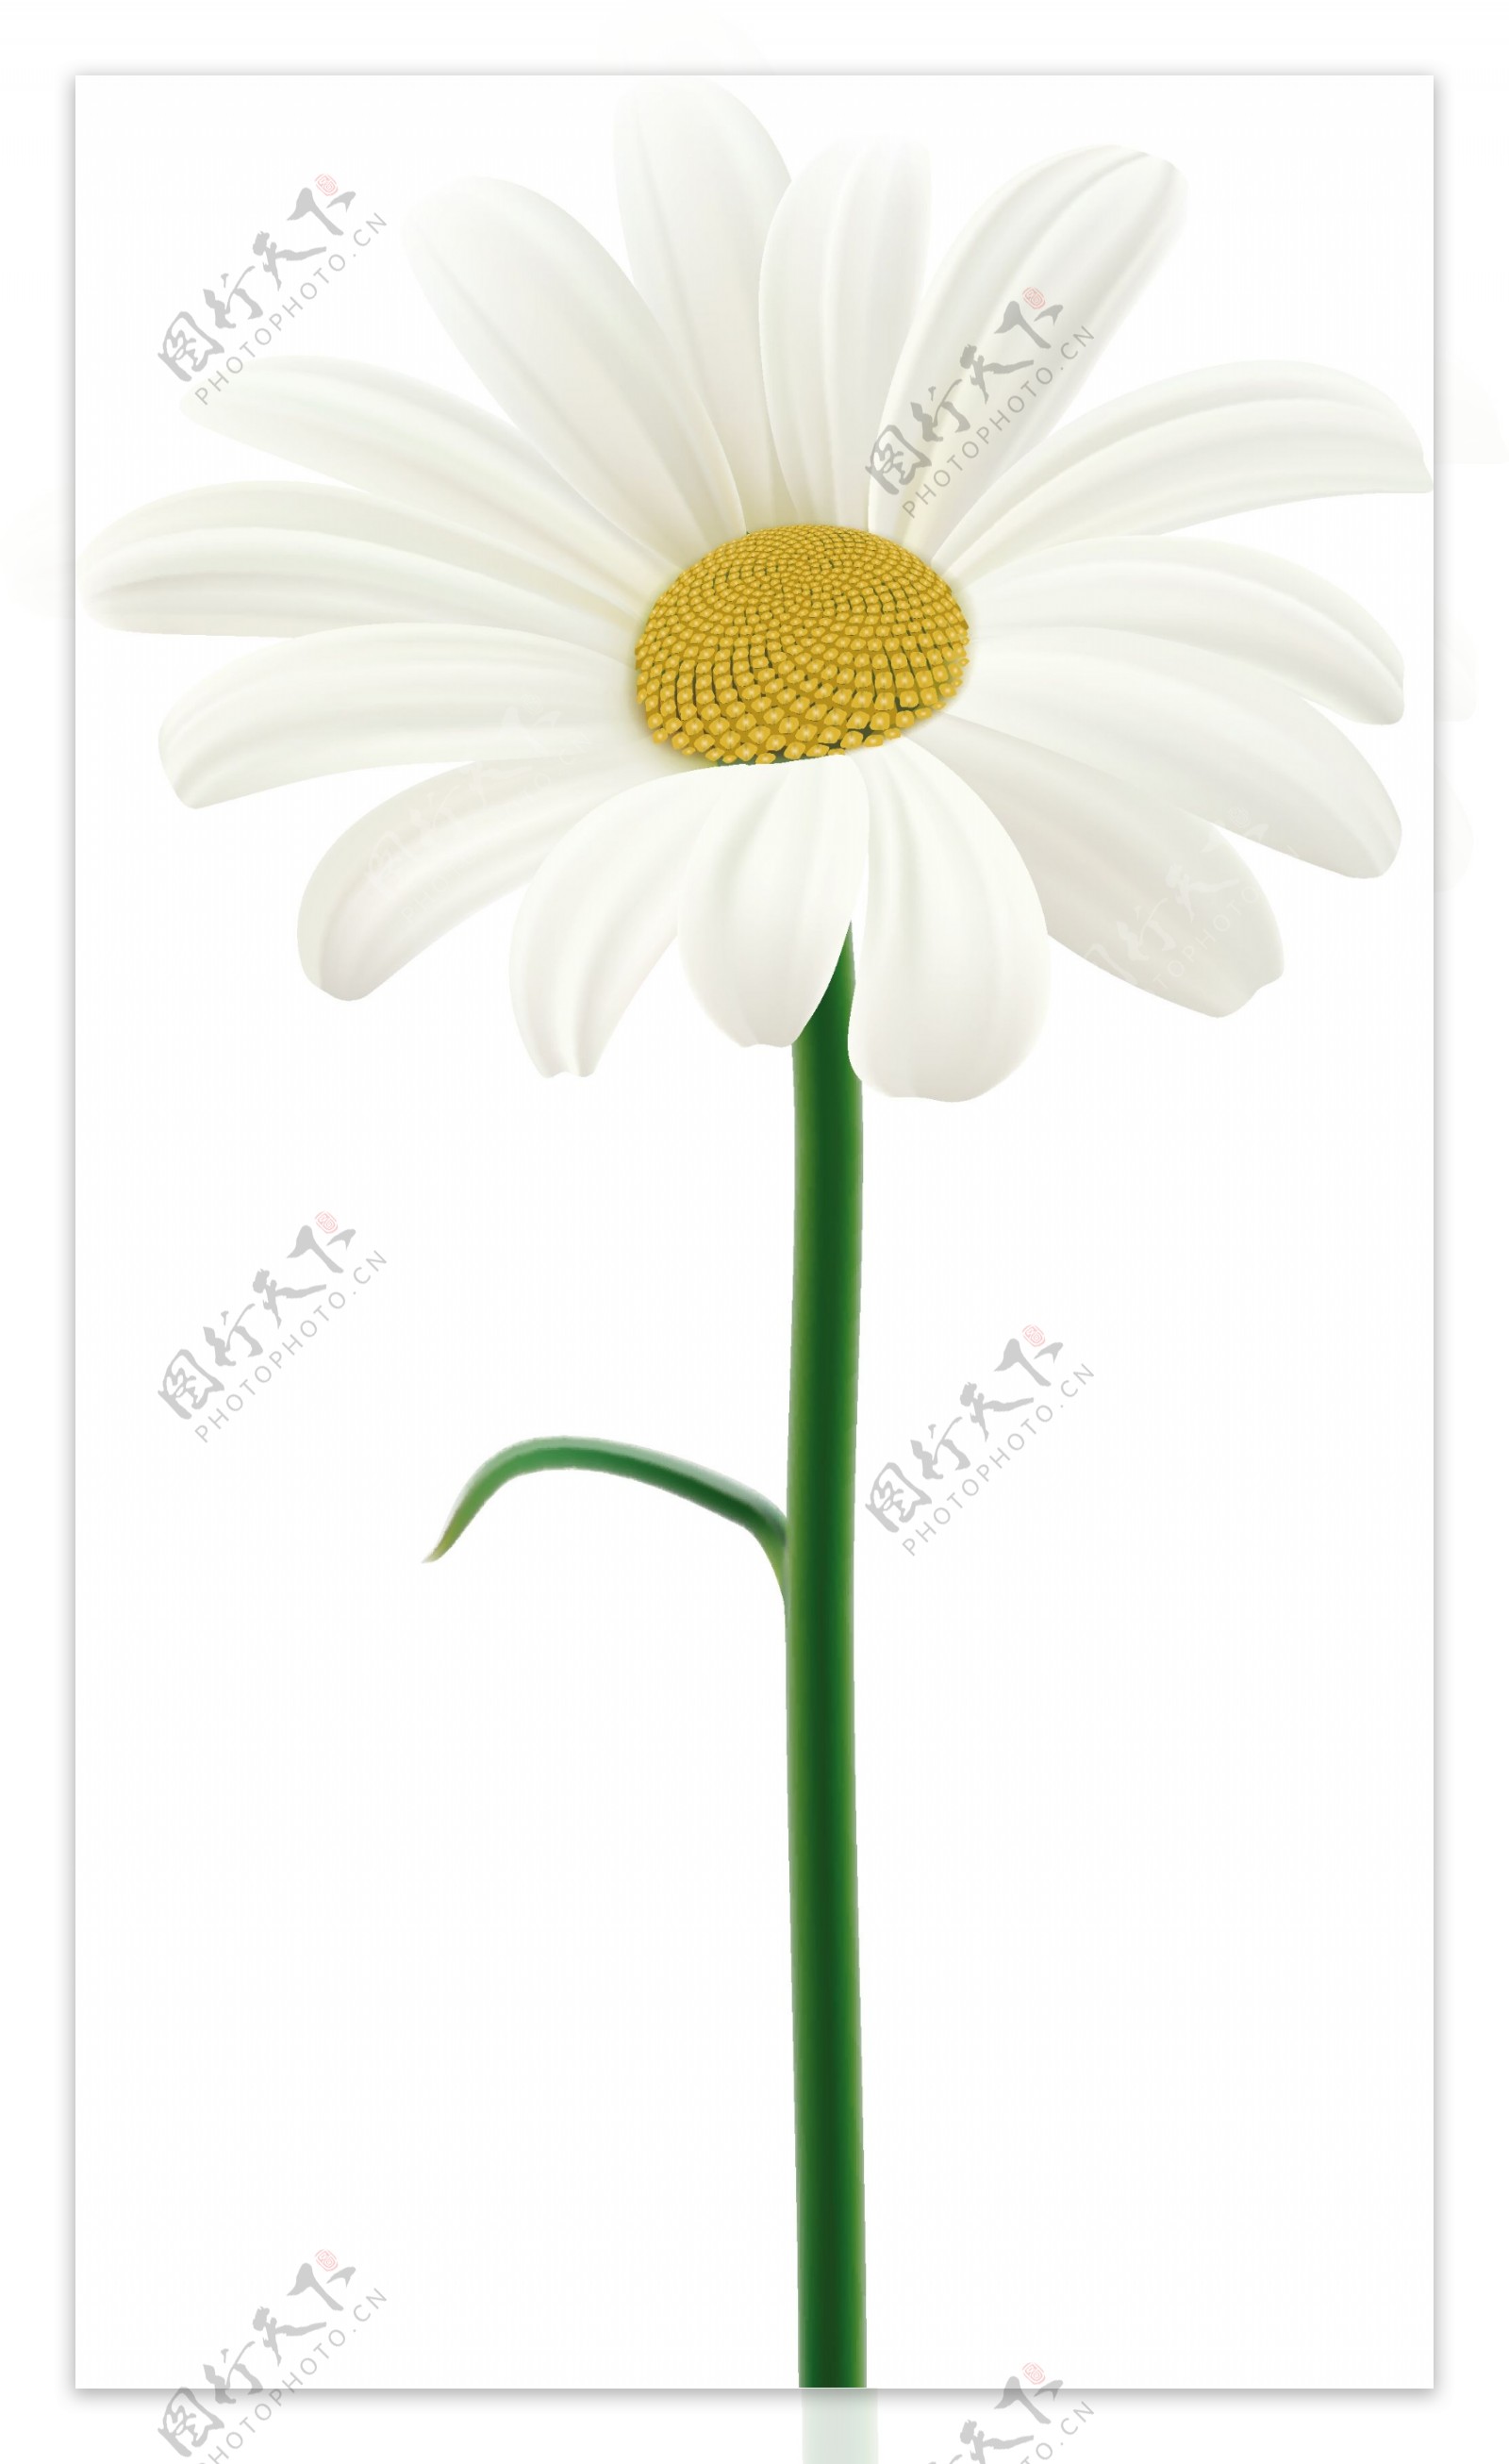 单根盛开的白色花朵矢量